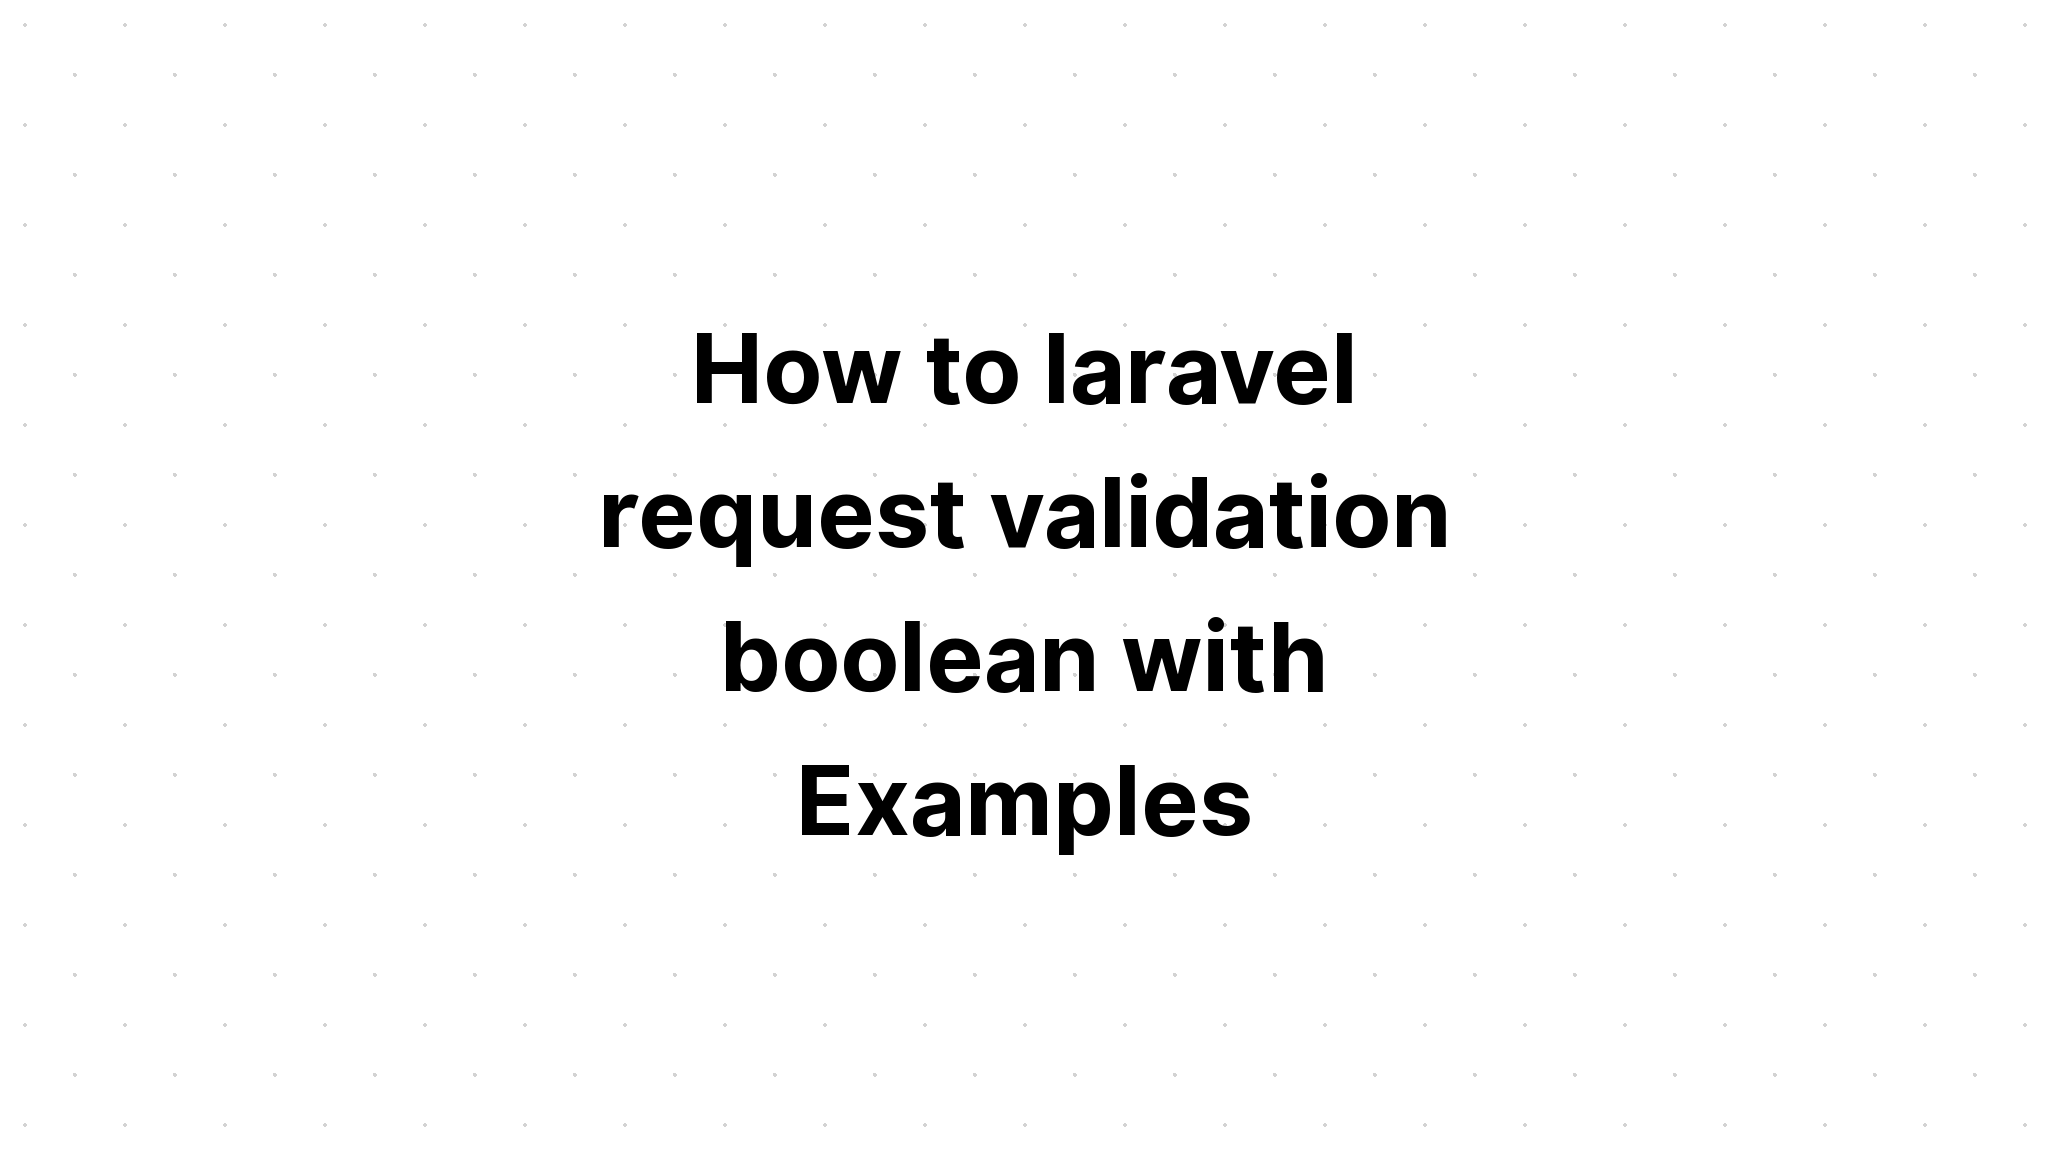 Cách laravel xác thực yêu cầu boolean với các ví dụ